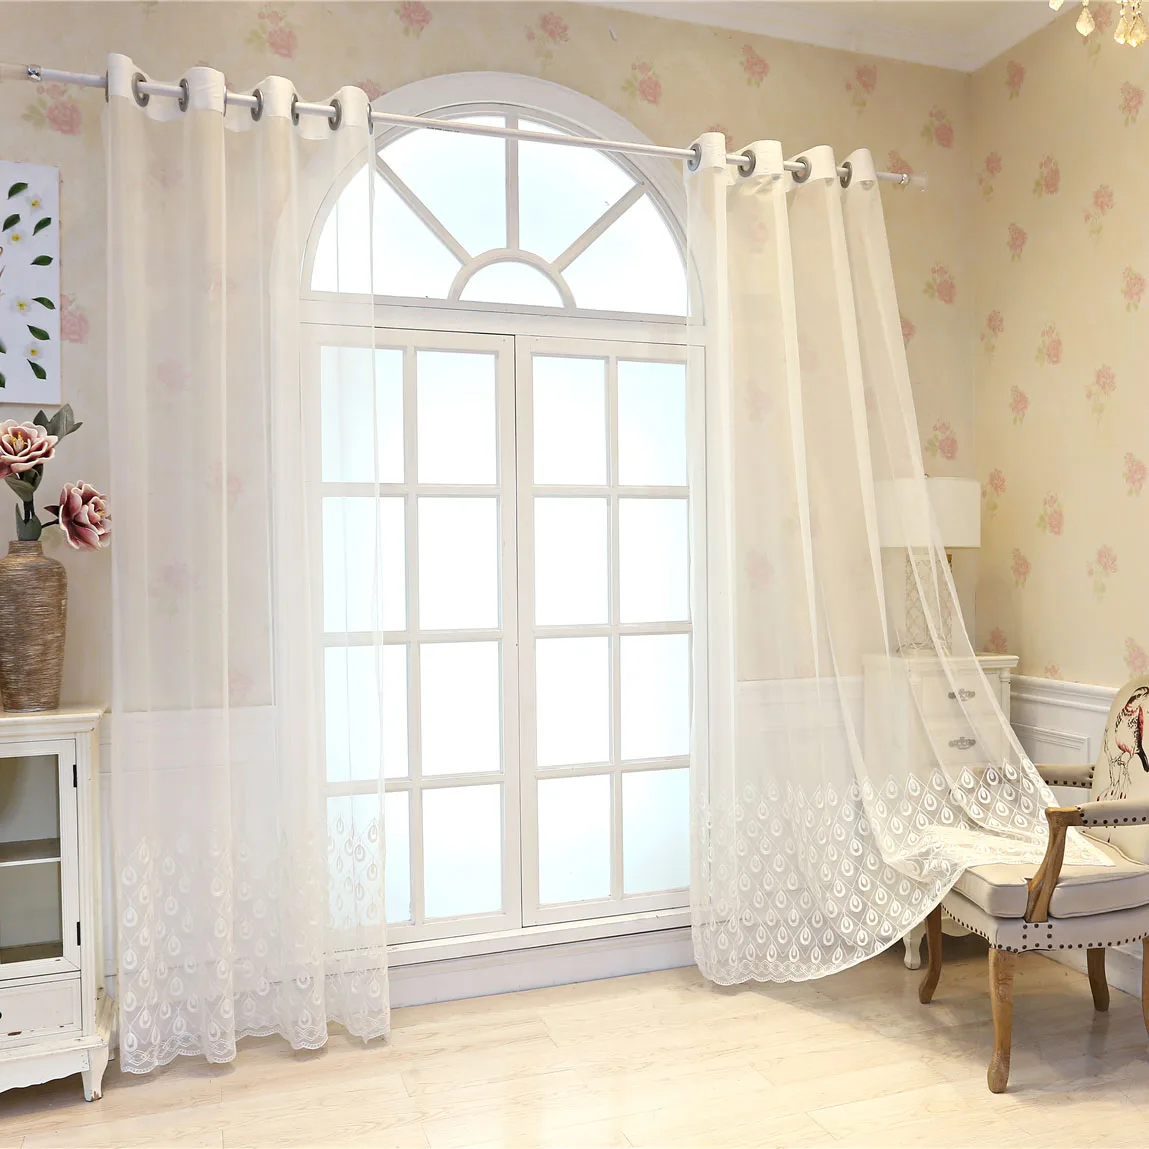 Медленная душа павлин открытие белый вышитый тюль шторы s шторы на окна для гостиной Дети 3d панели кружева отвесные пользовательские шторы